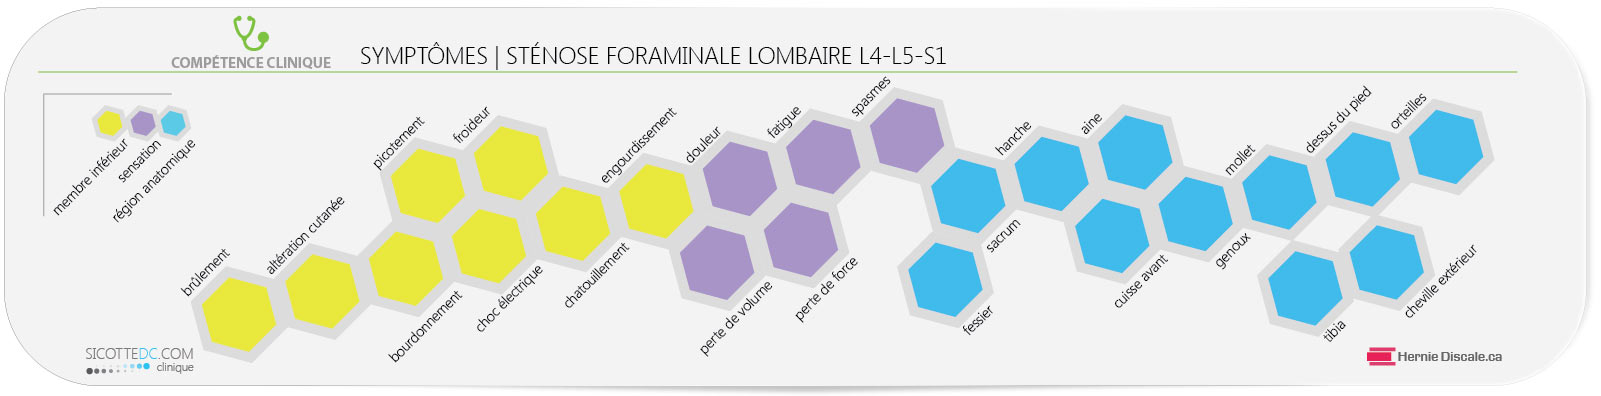 La liste des symptômes de la sténose foraminale lombaire: L4-L5-S1